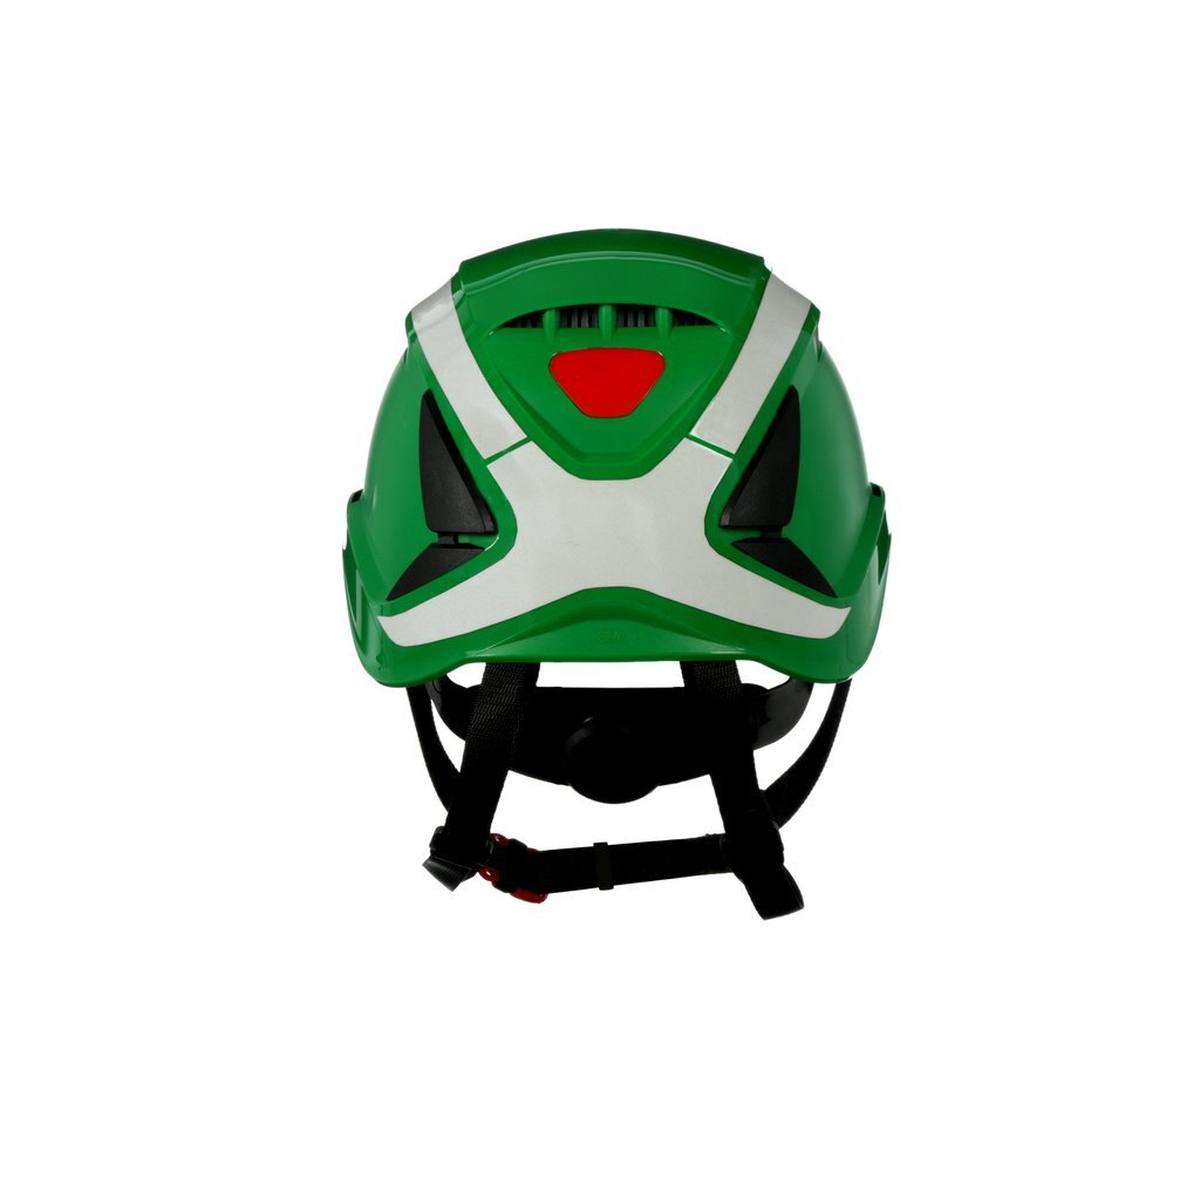 3M SecureFit safety helmet, X5003V-CE, green, ventilated, reflective, CE